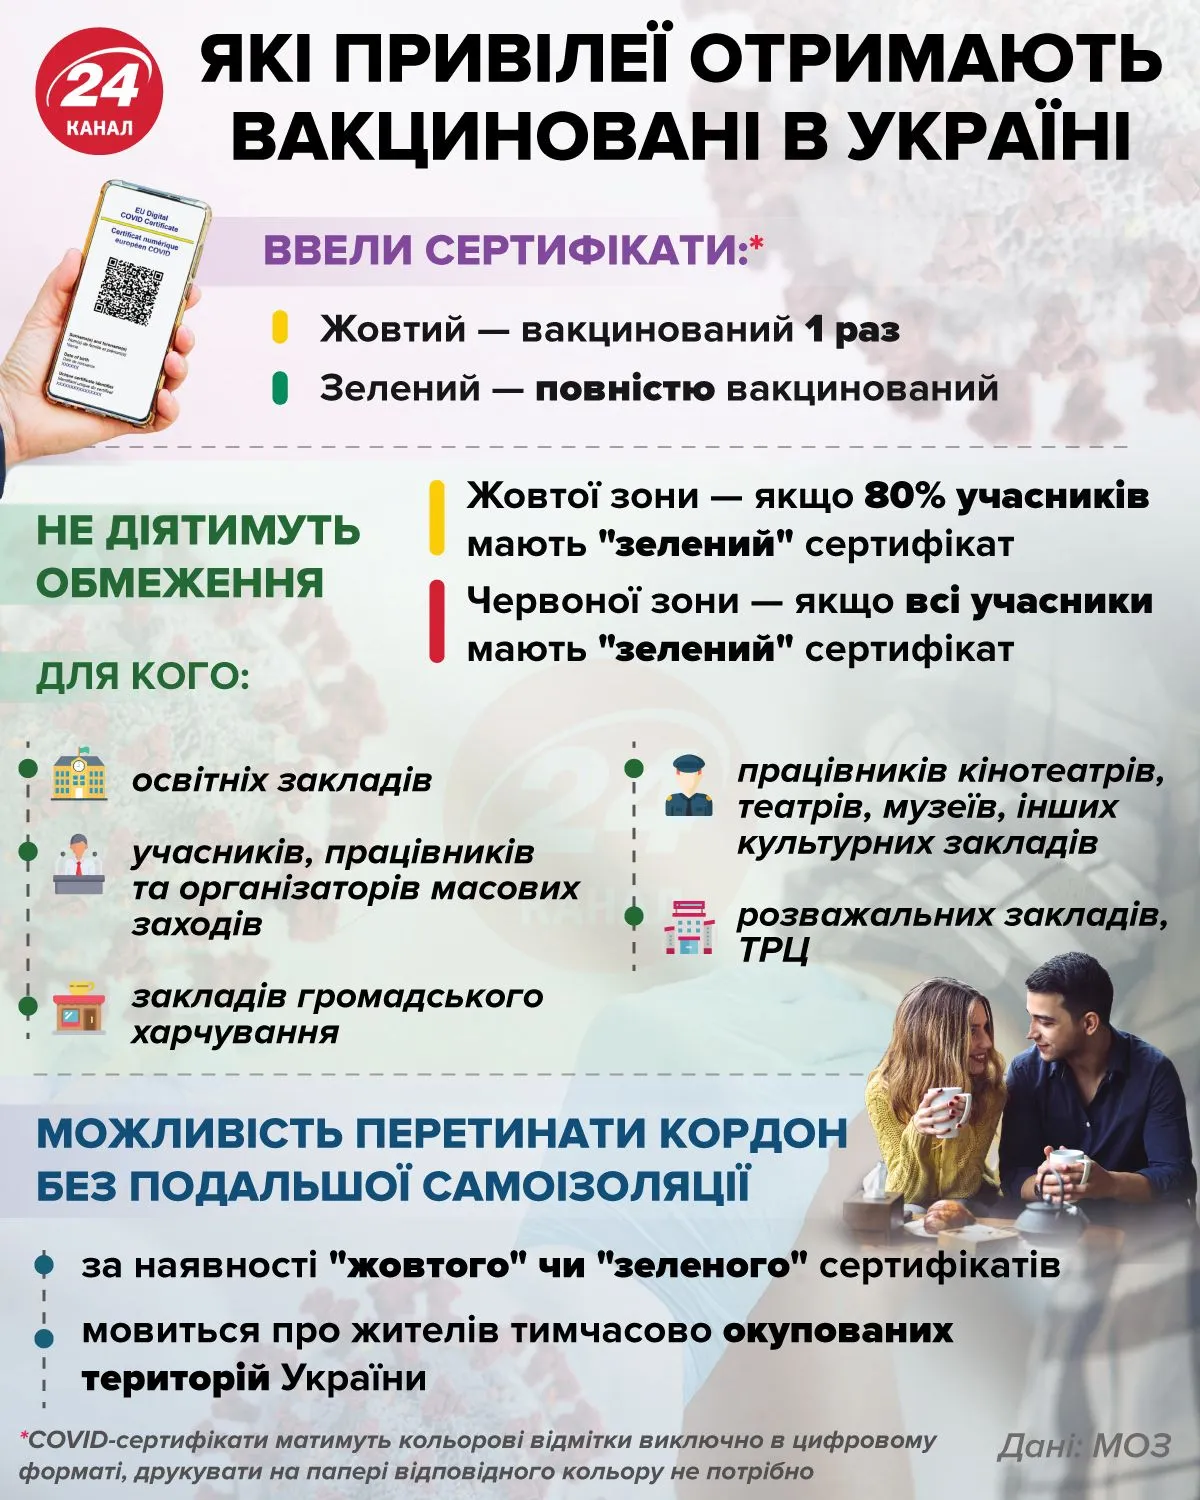 Які привілеї отримають вакциновані українці / Джерело: МОЗ / Інфографіка 24 каналу